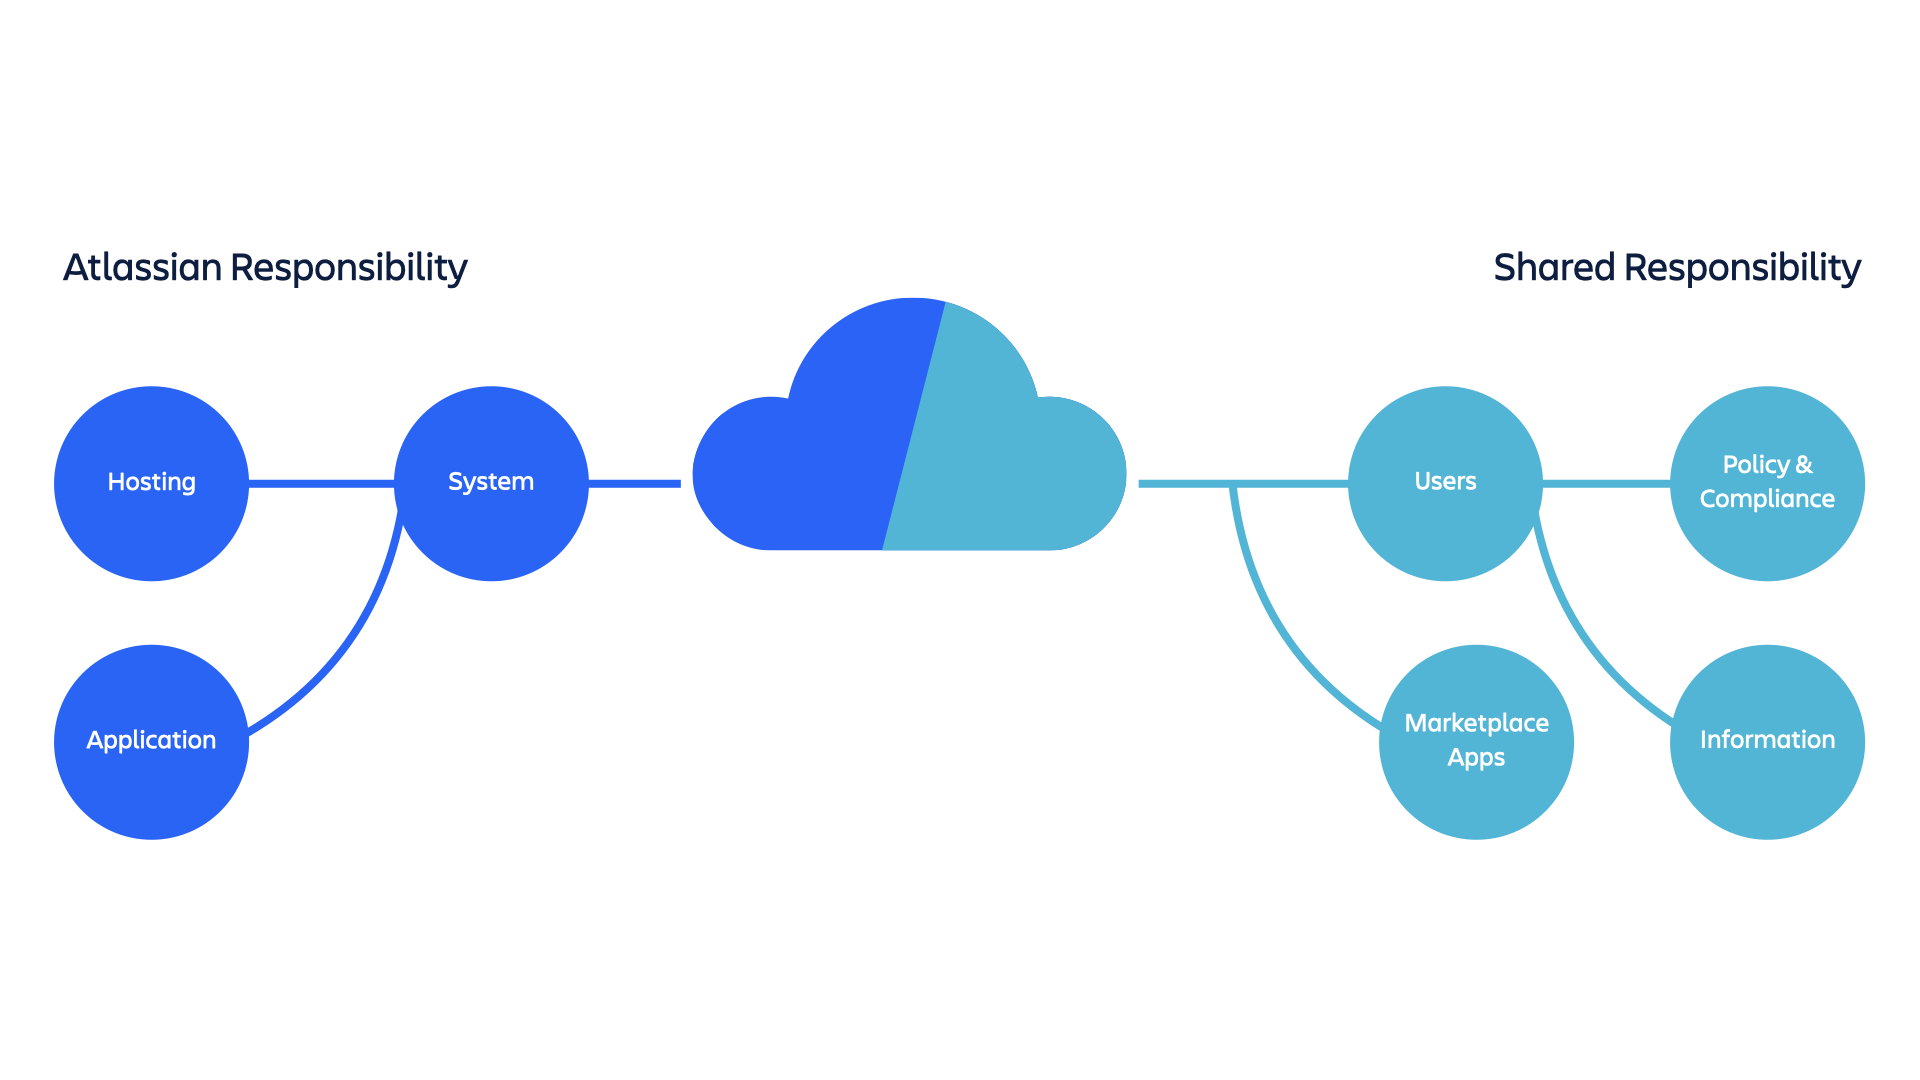 Diagrama da responsabilidade e da responsabilidade compartilhada da Atlassian